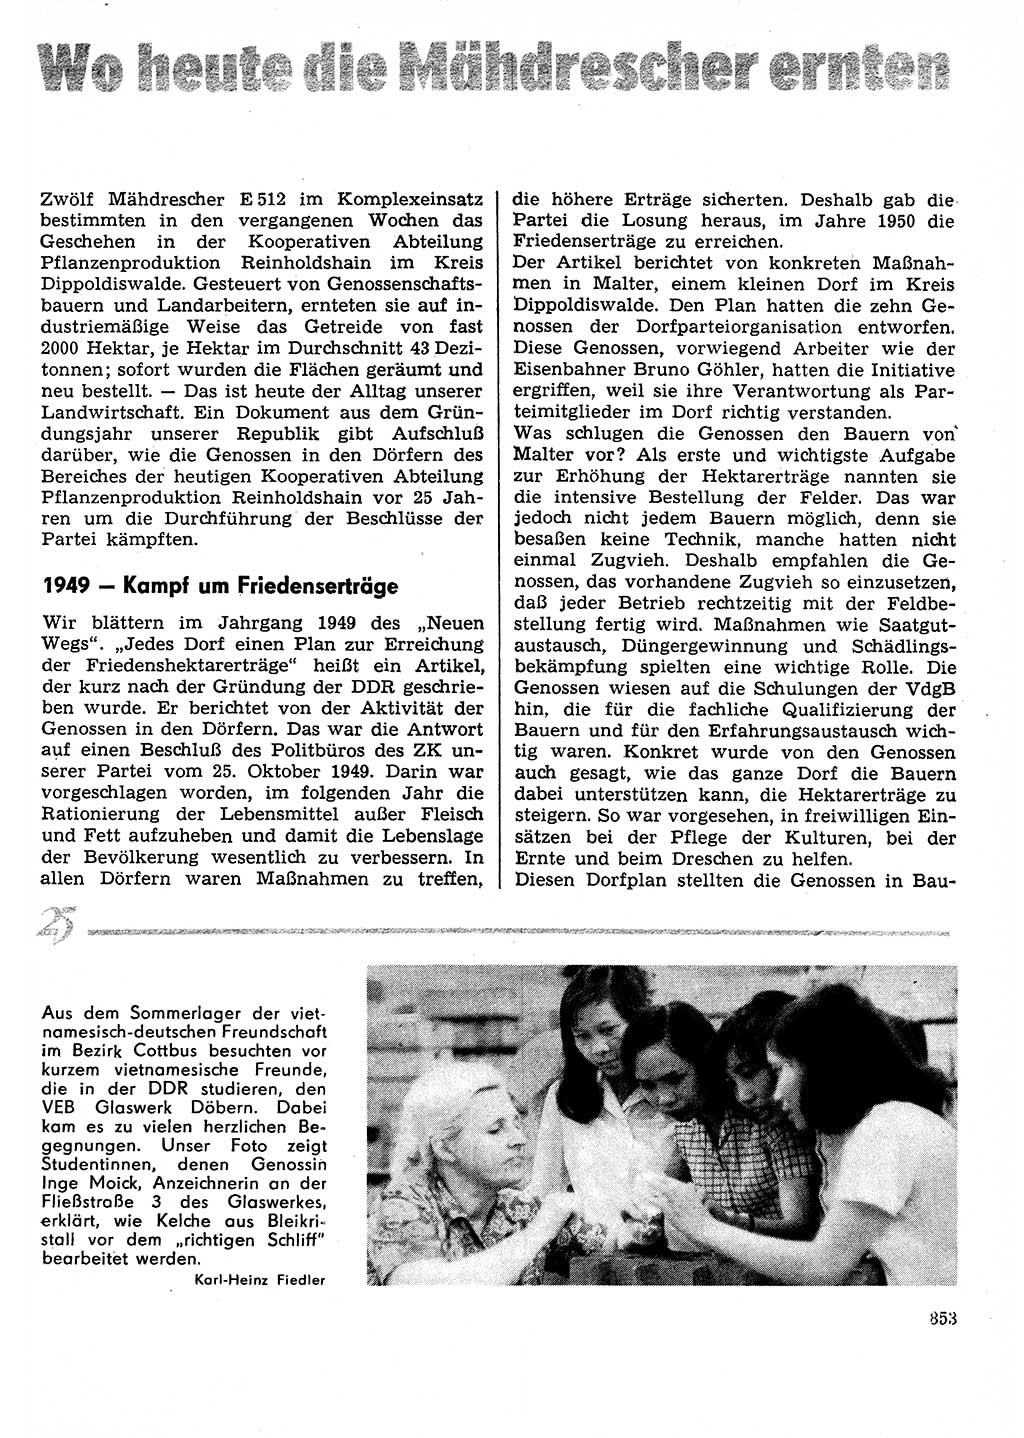 Neuer Weg (NW), Organ des Zentralkomitees (ZK) der SED (Sozialistische Einheitspartei Deutschlands) für Fragen des Parteilebens, 29. Jahrgang [Deutsche Demokratische Republik (DDR)] 1974, Seite 853 (NW ZK SED DDR 1974, S. 853)